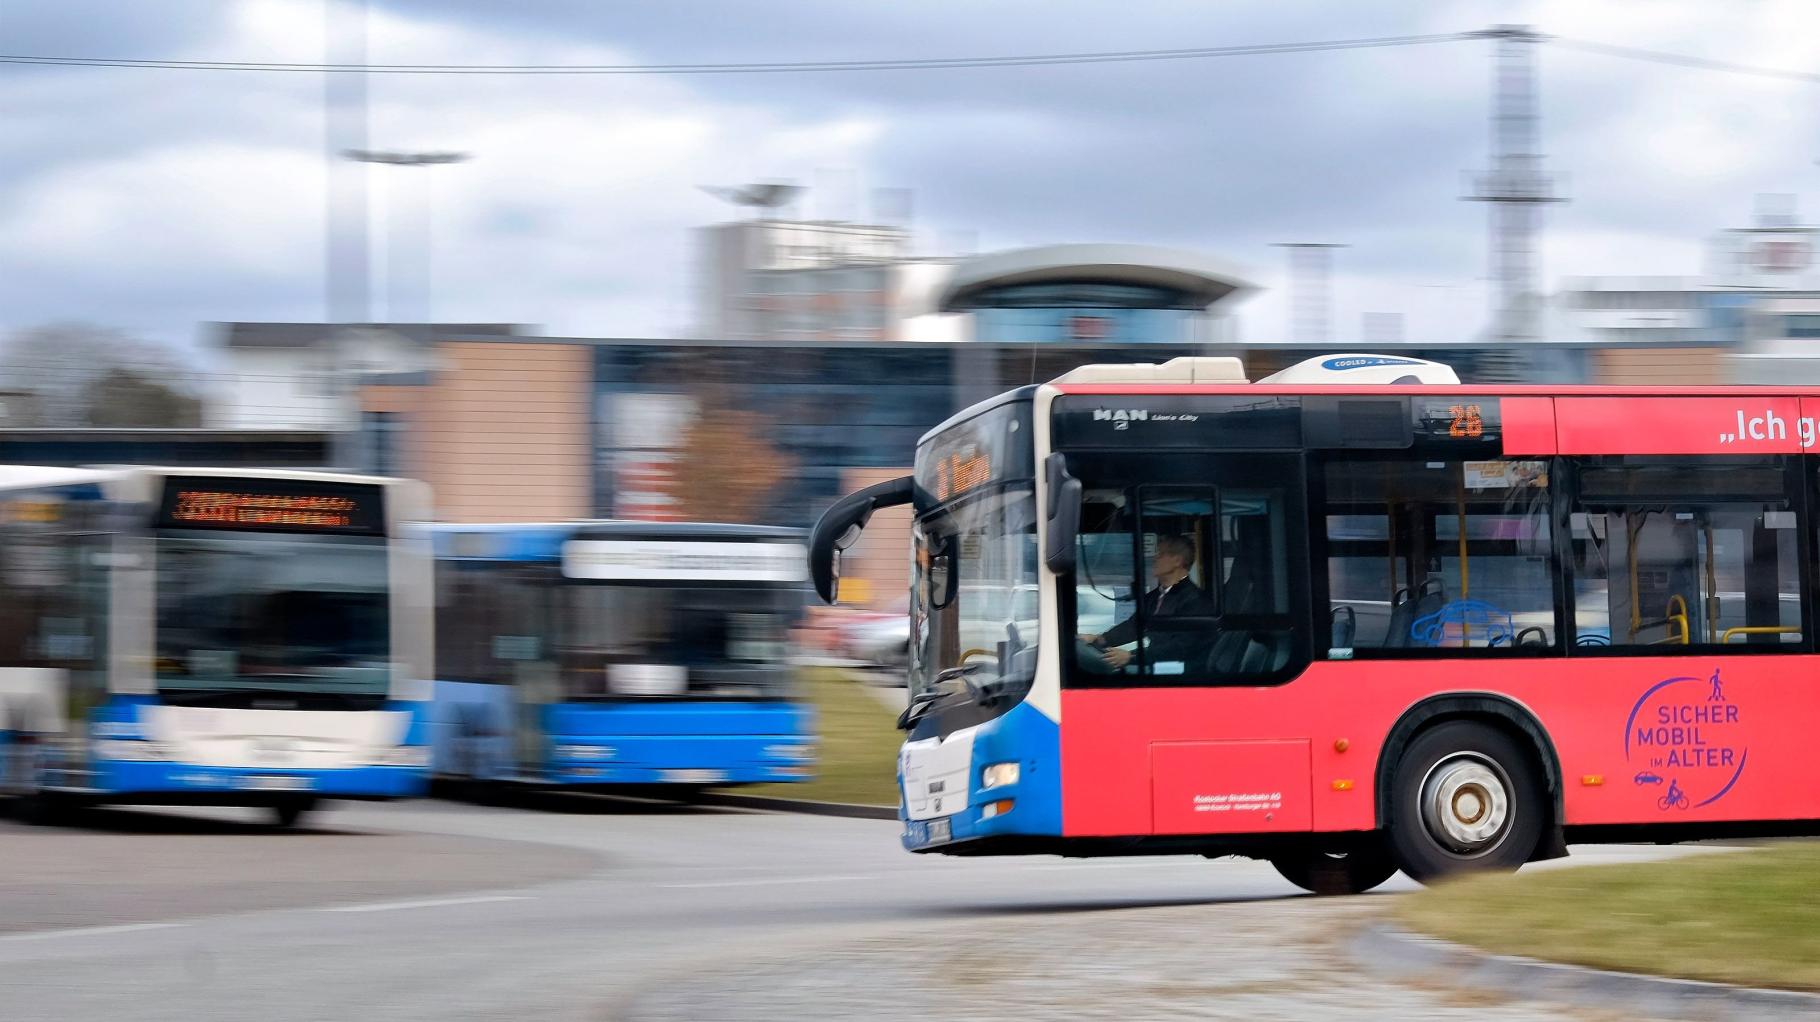 Sperrung Weidendamm in Rostock: Umleitung der Buslinien 45 und F2